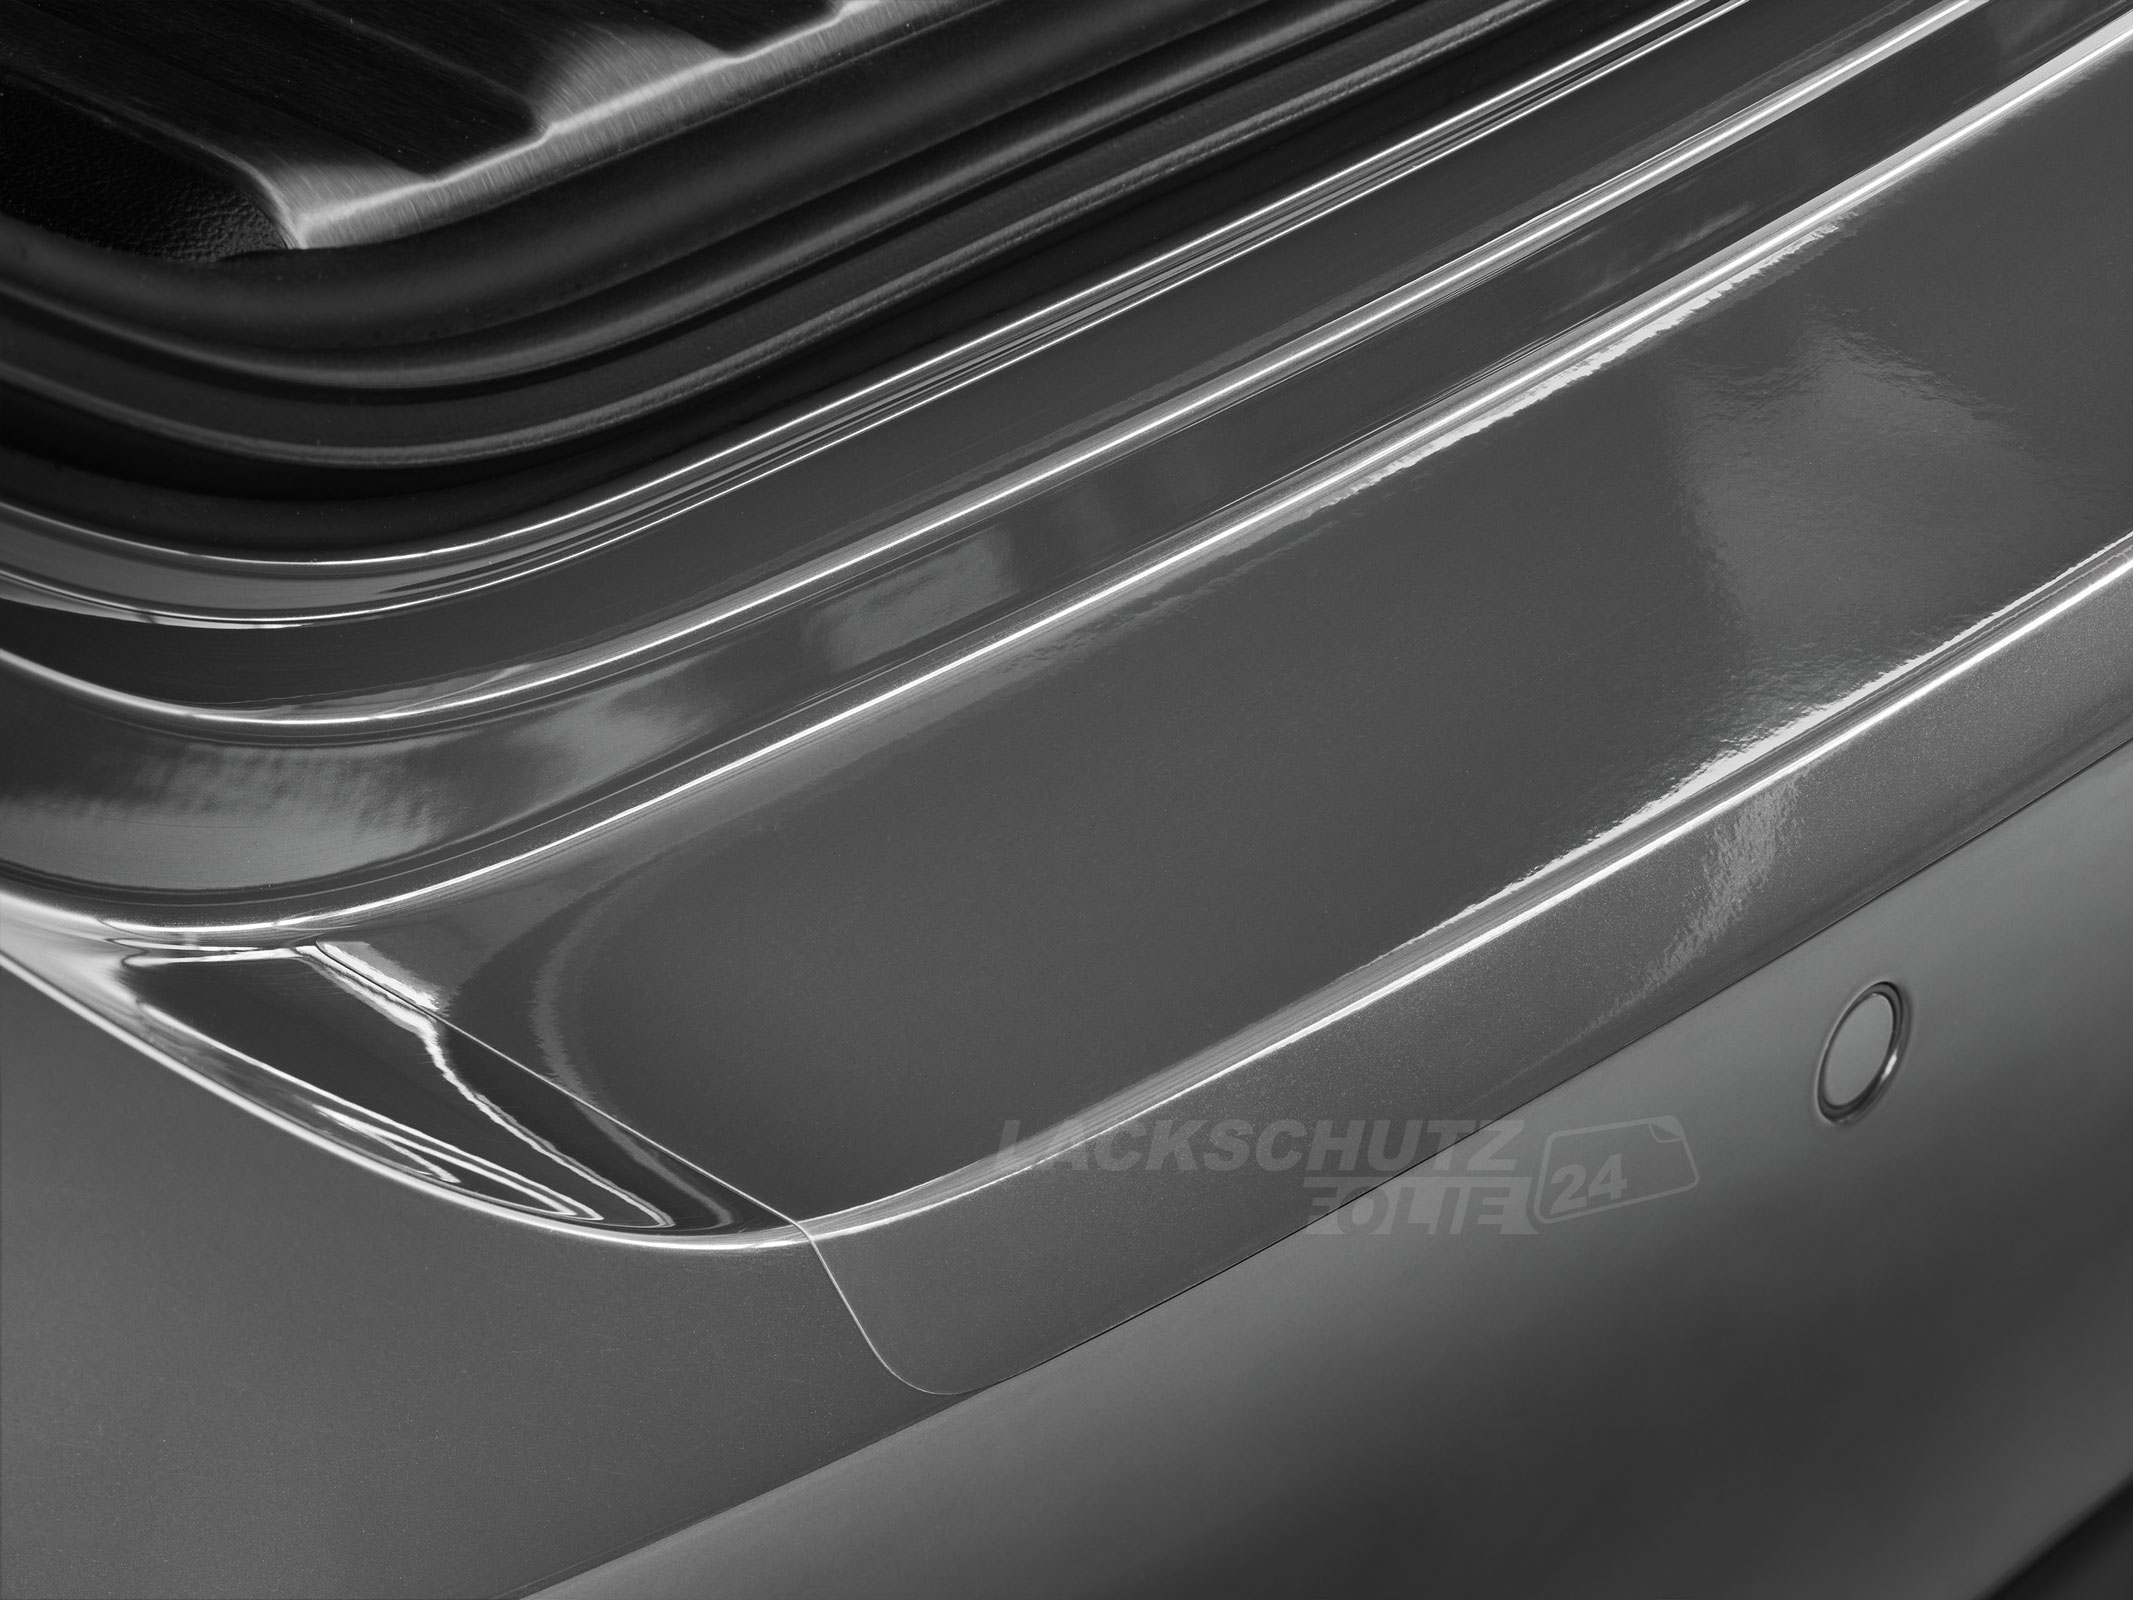 Ladekantenschutzfolie - Transparent Glatt Hochglänzend 240 µm stark für Toyota Avensis Limousine Typ T25, BJ 2003-2008